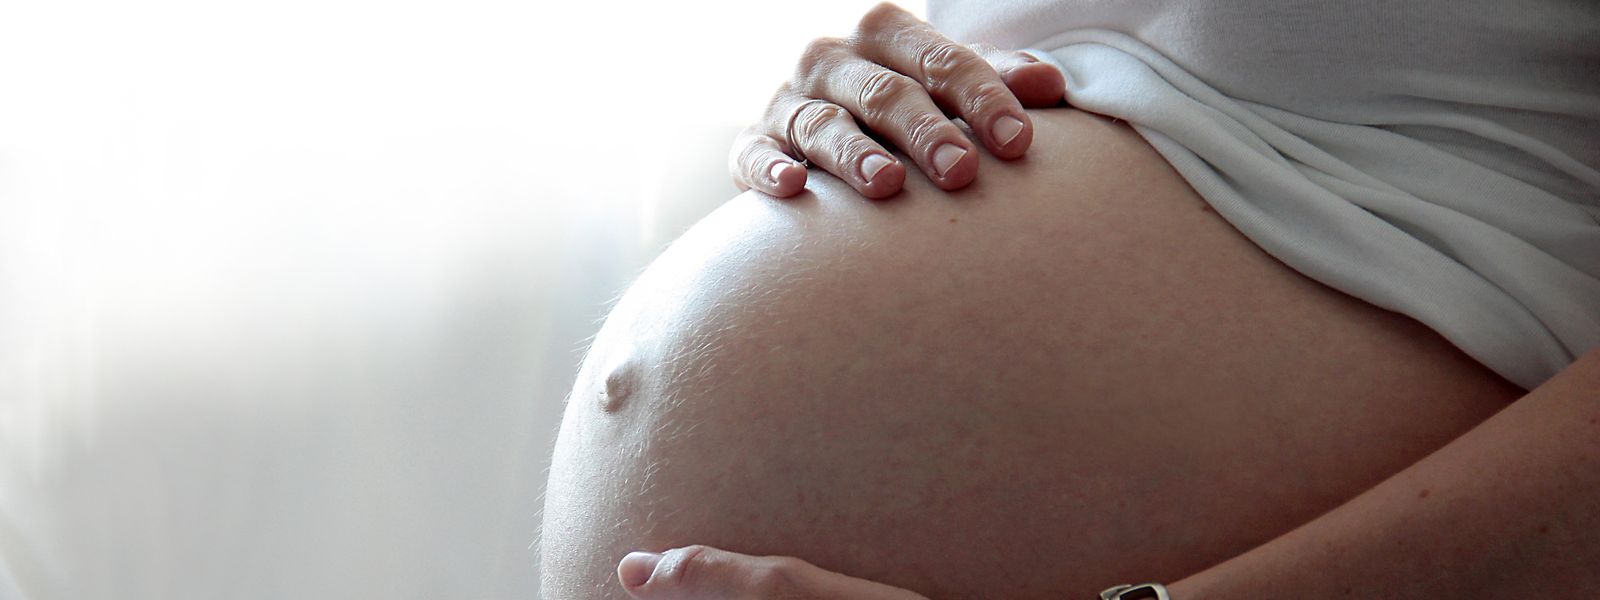 Jetzt sind schnelle innovative Antworten gefragt und keine langen Diskussionen mehr, wie die Maternité im CHdN neonatologisch versorgt werden kann. 